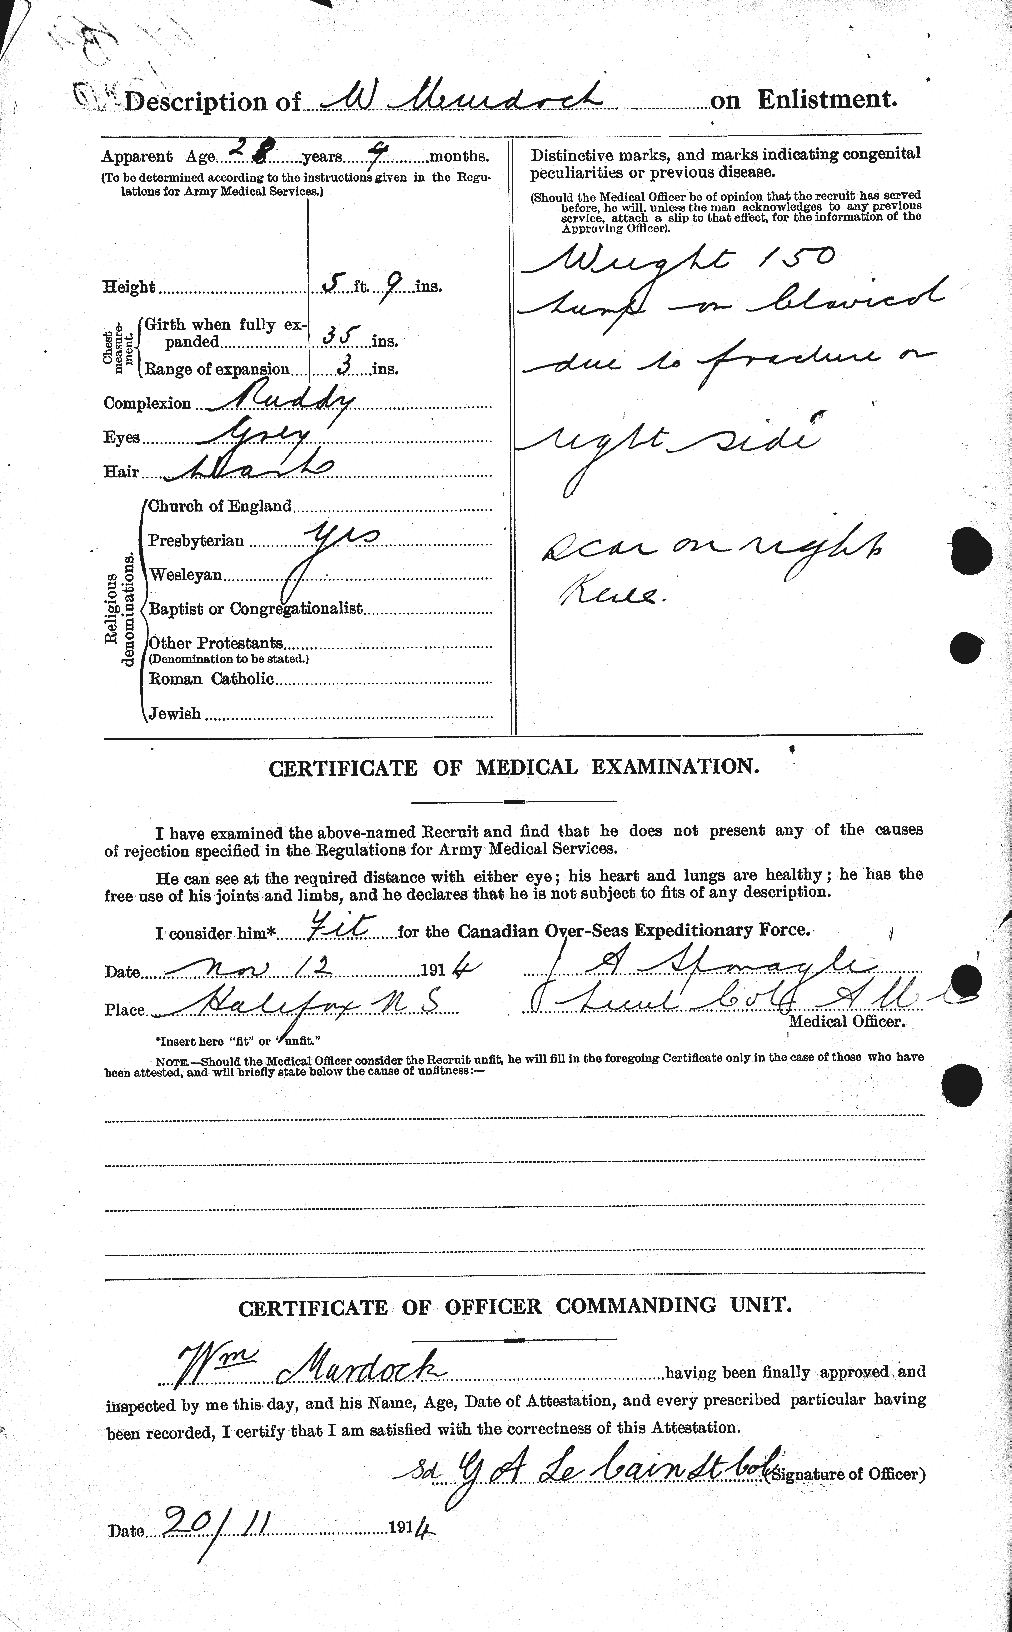 Dossiers du Personnel de la Première Guerre mondiale - CEC 510887b